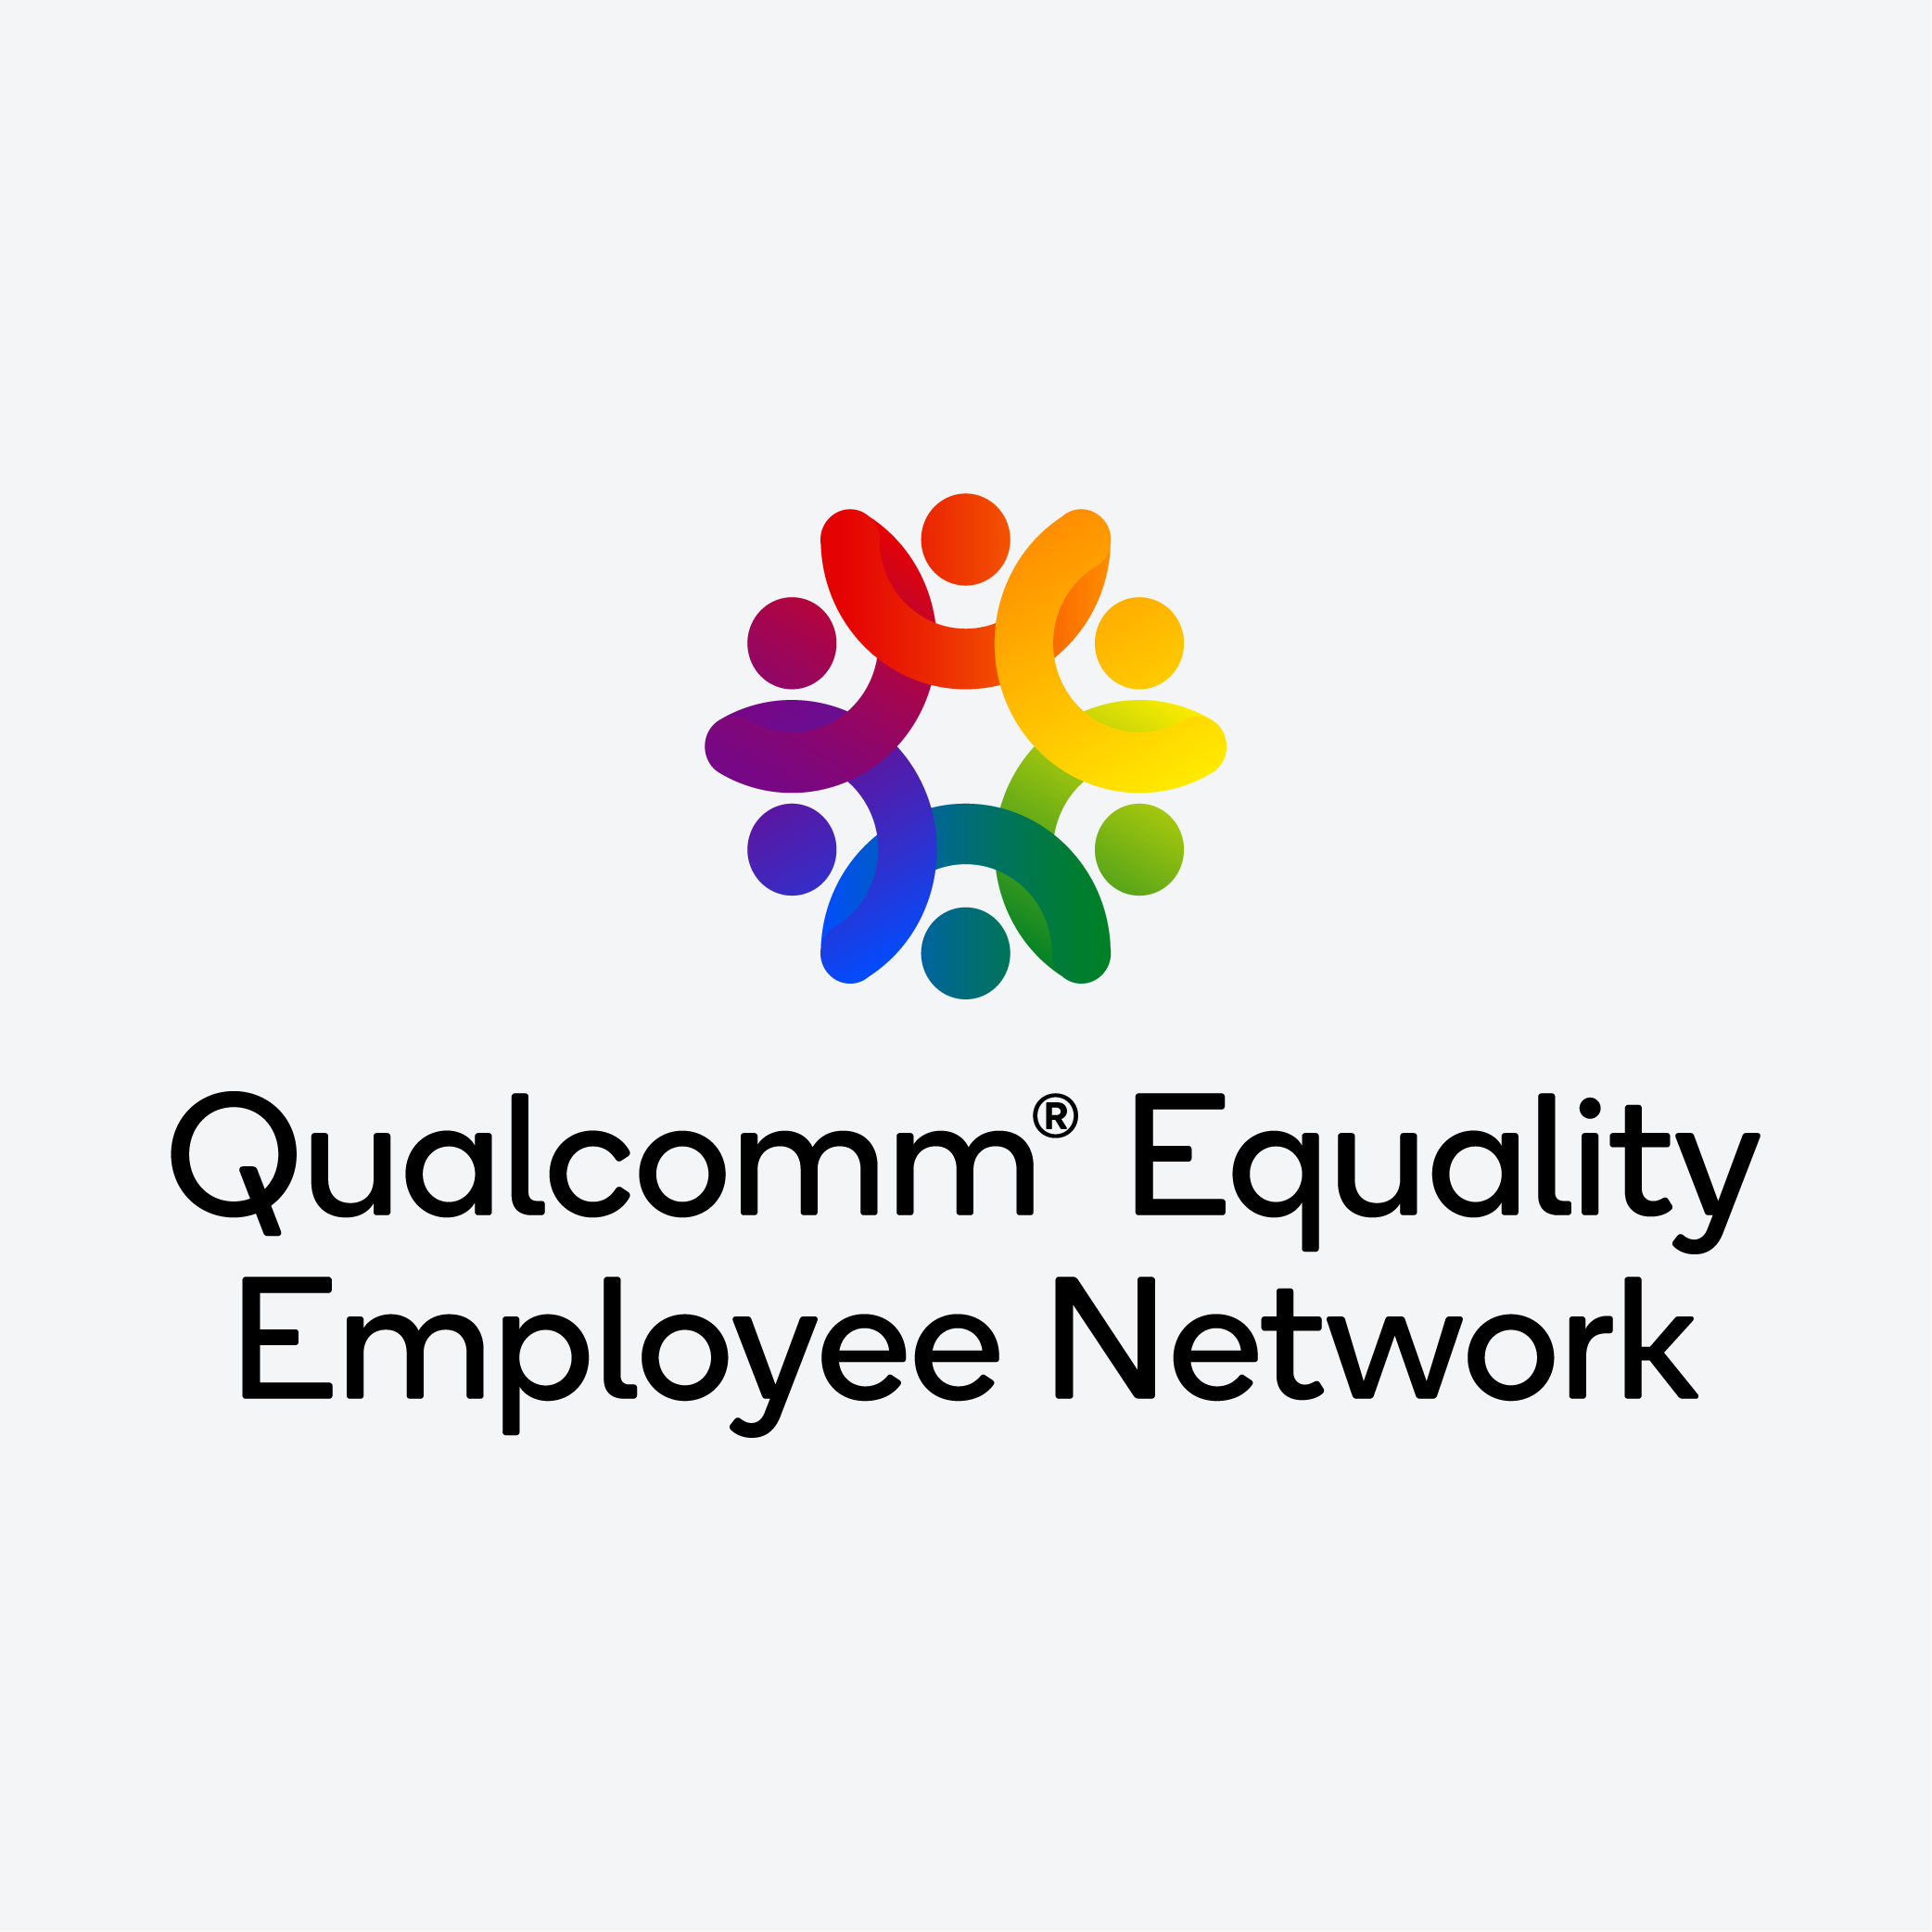 Qualcomm Equality Employee Network Logo